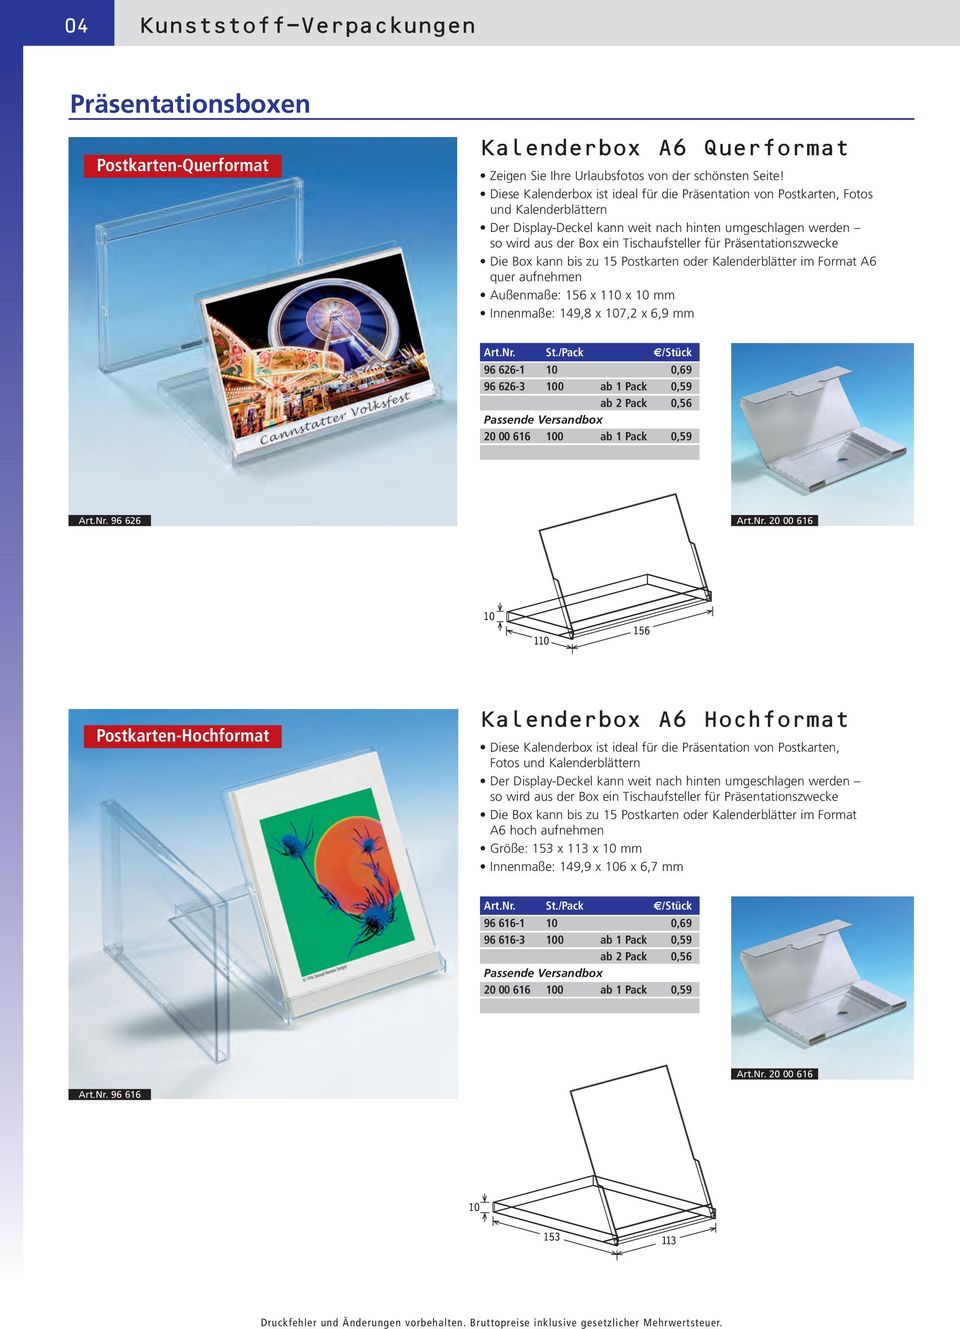 Präsentationszwecke Die Box kann bis zu 15 Postkarten oder Kalenderblätter im Format A6 quer aufnehmen Außenmaße: 156 x 110 x 10 mm Innenmaße: 149,8 x 107,2 x 6,9 mm 96 626-1 10 0,69 96 626-3 100 ab